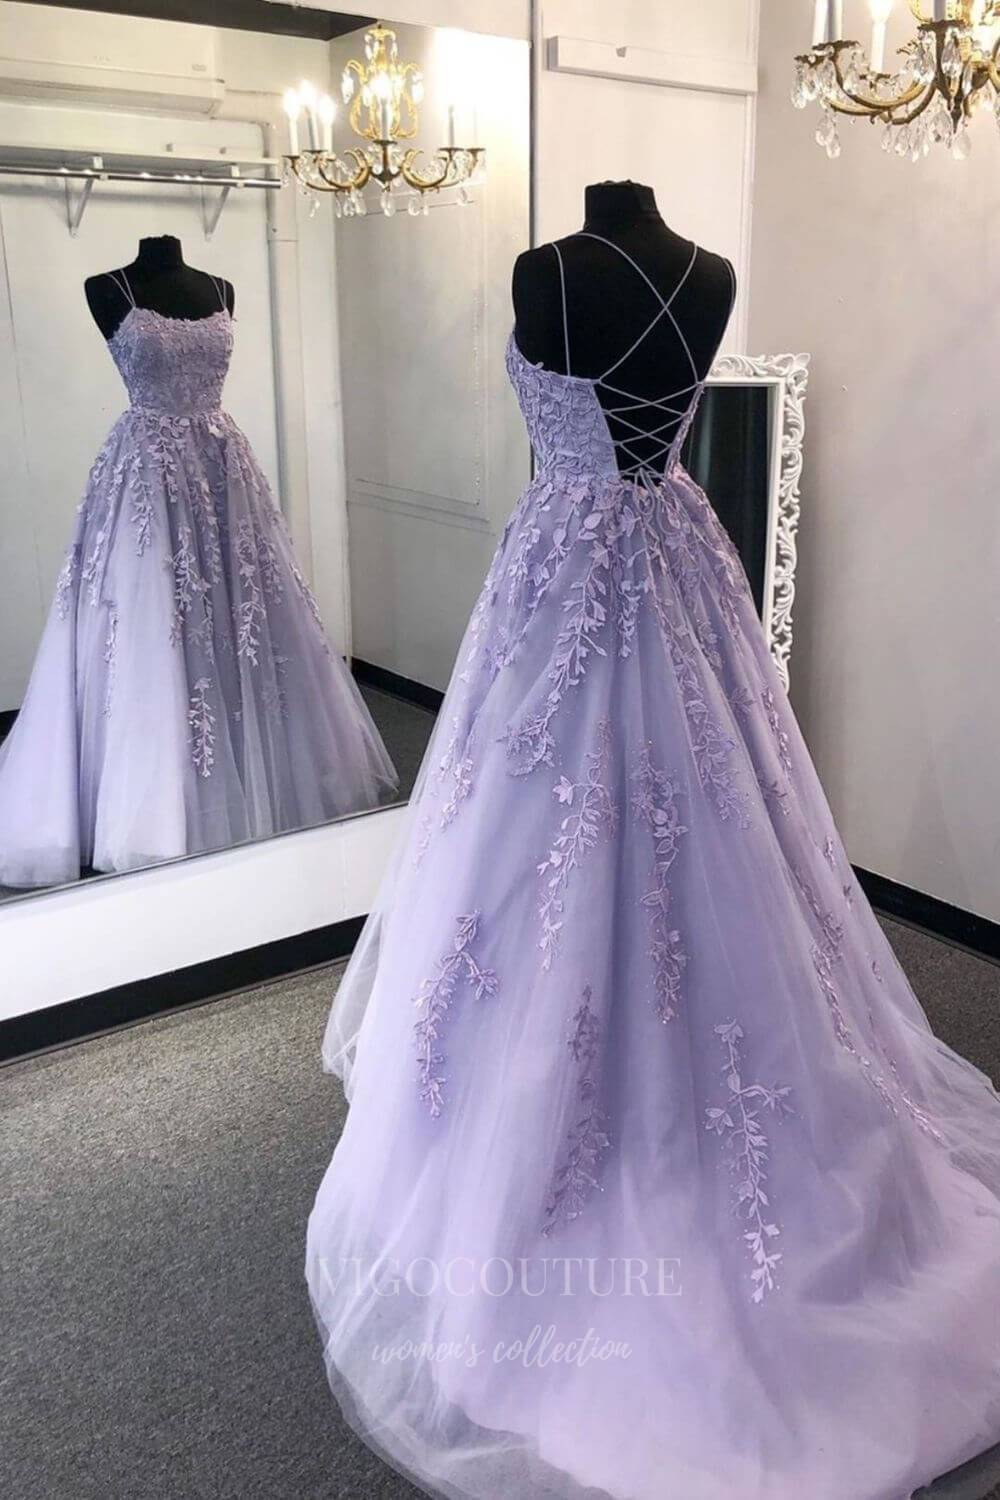 vigocouture-Lace Applique Prom Dress 2022 Spaghetti Strap Evening Gown 20375-Prom Dresses-vigocouture-Lavender-US2-